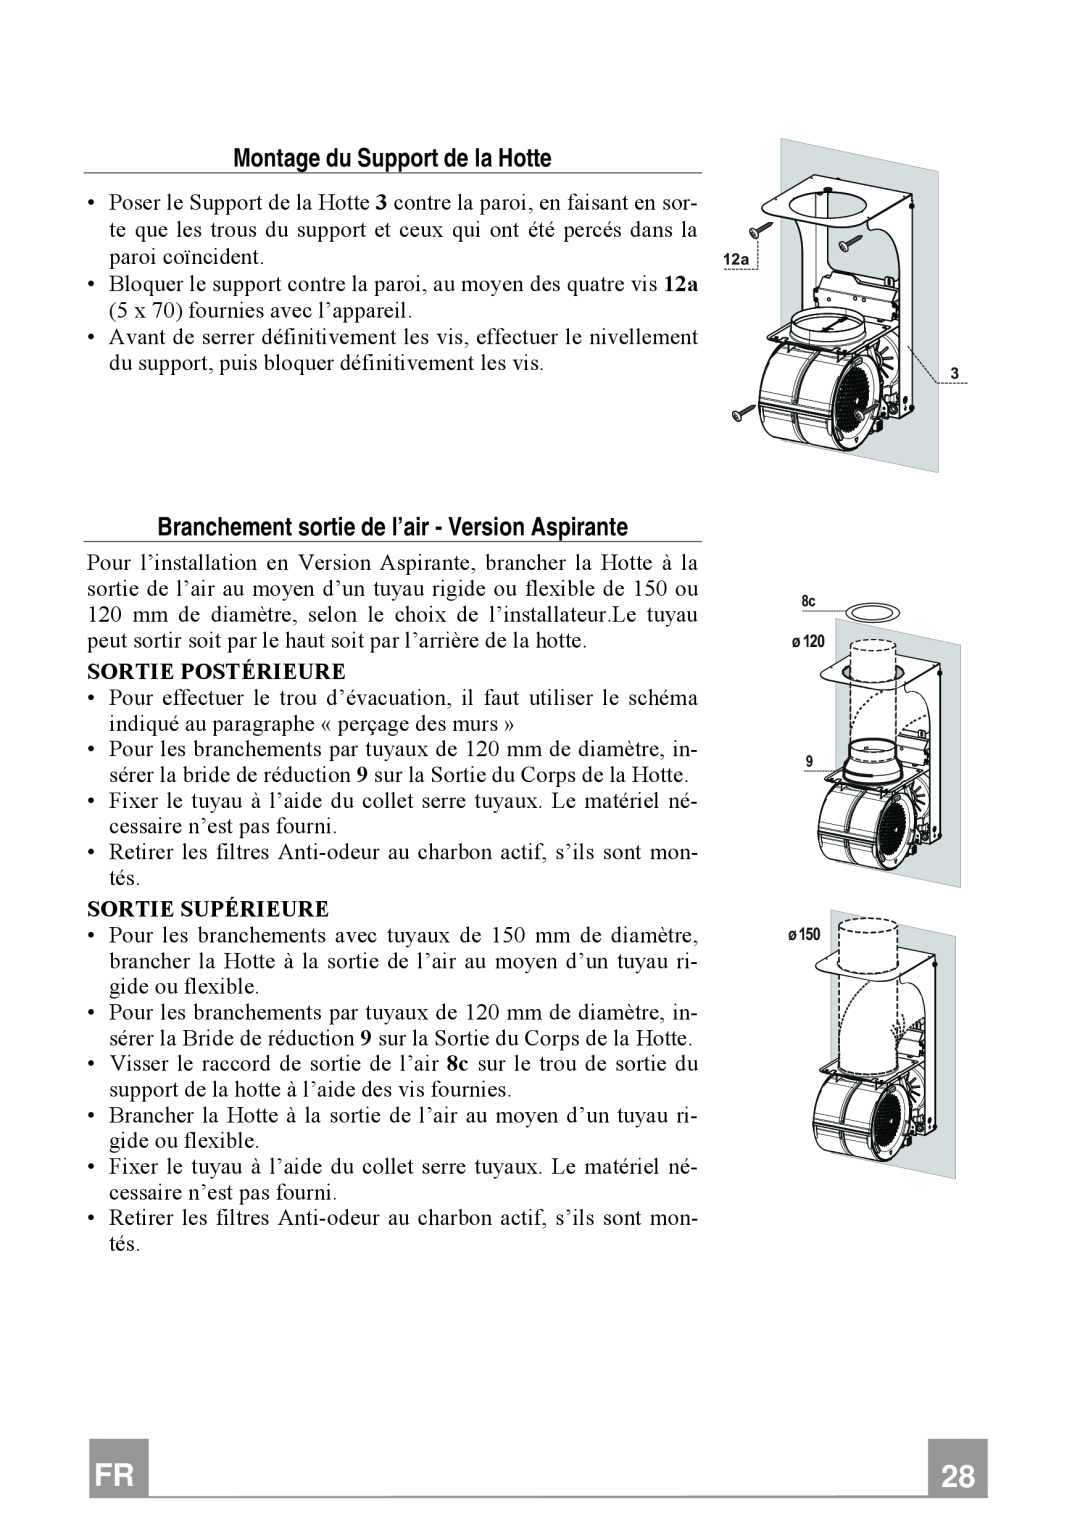 Franke Consumer Products FTU 3807 W manual Montage du Support de la Hotte, Branchement sortie de l’air - Version Aspirante 